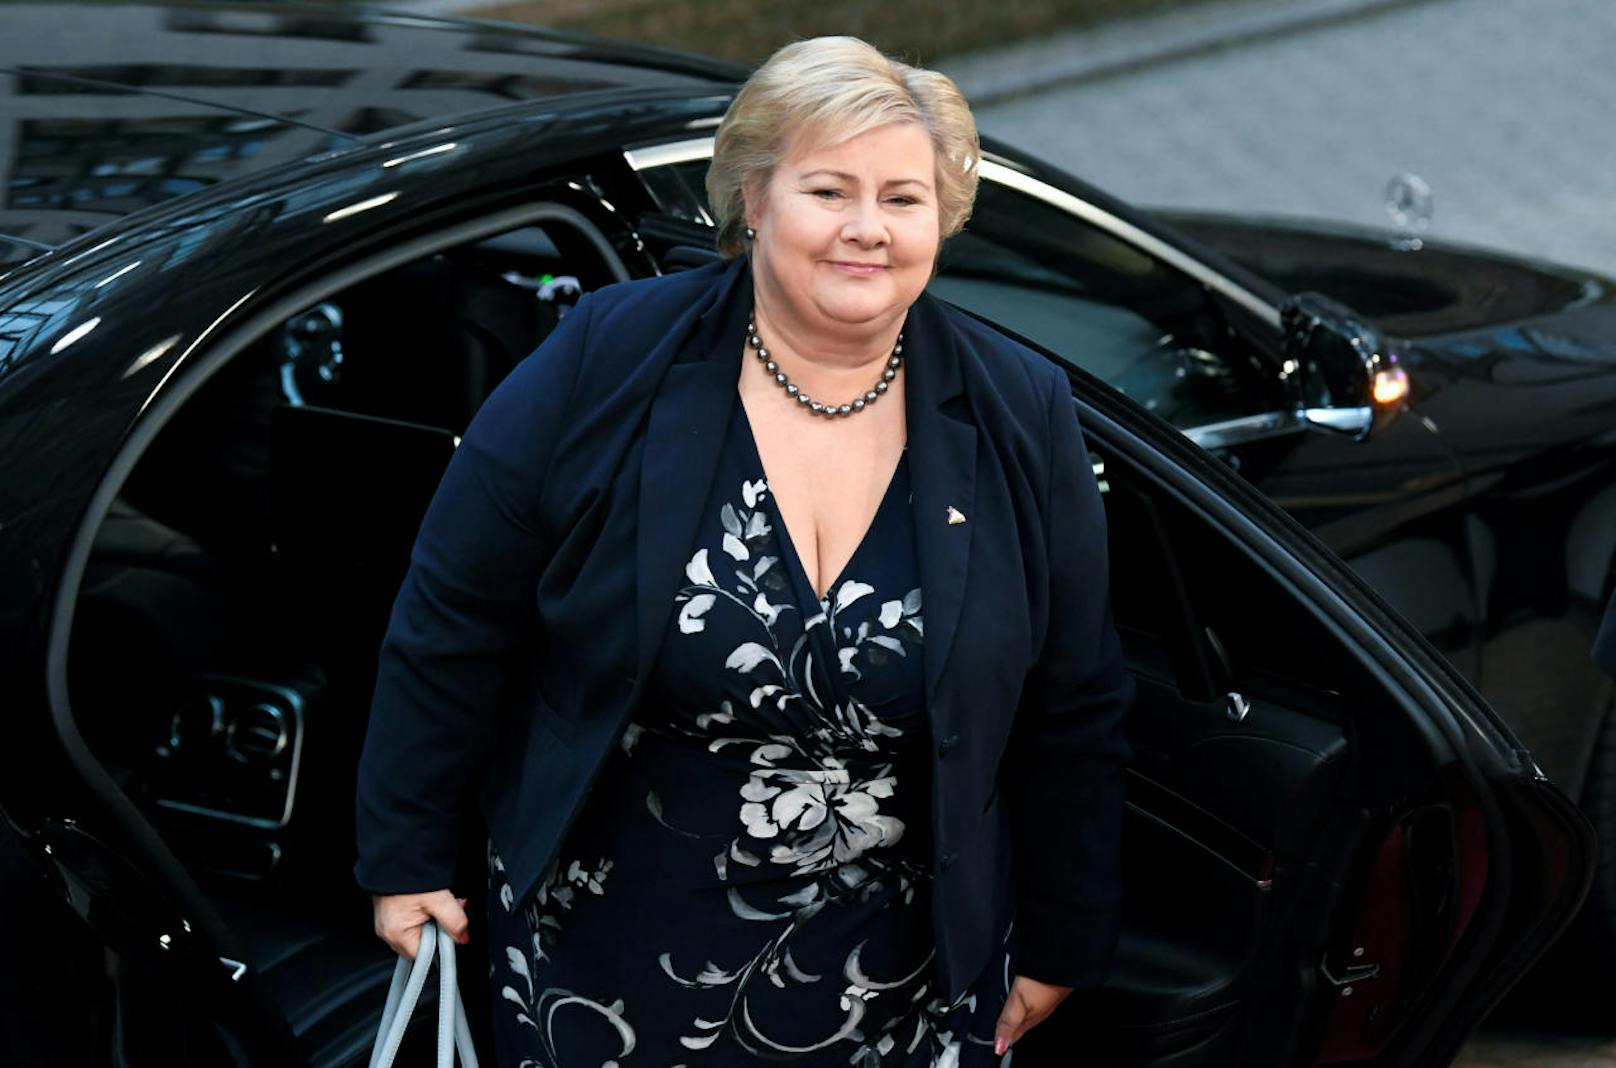 <b>Platz 37: Norwegen</b>
Norwegen ist ein sehr reiches Land. Die norwegische Premierministerin Erna Solberg verdient mit <b>171.800 Euro</b> jährlich dafür vergleichsweise wenig. Ein durchschnittliches norwegisches Jahreseinkommen liegt bei 55.400 Euro.